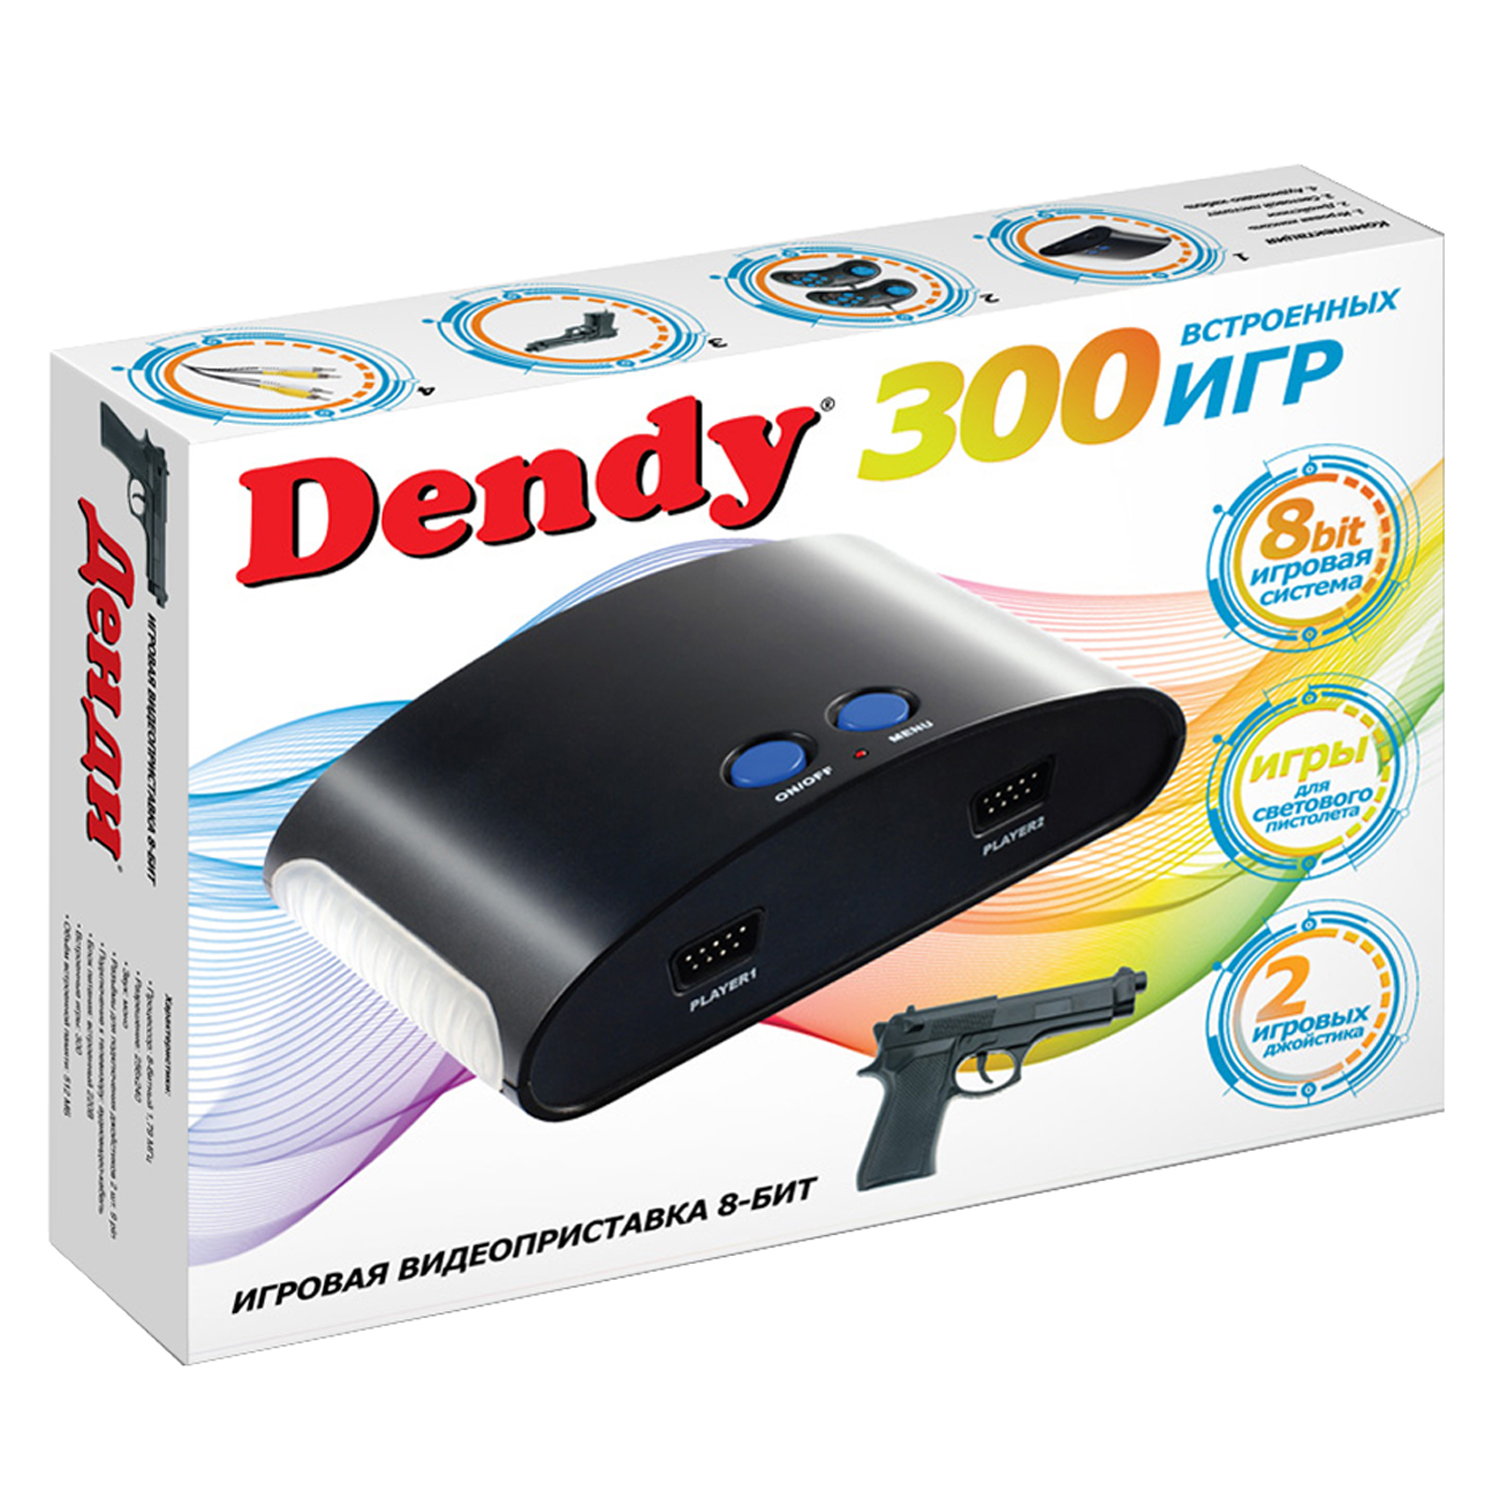 Игровая приставка Dendy 300 игр (8-бит) со световым пистолетом - фото 1